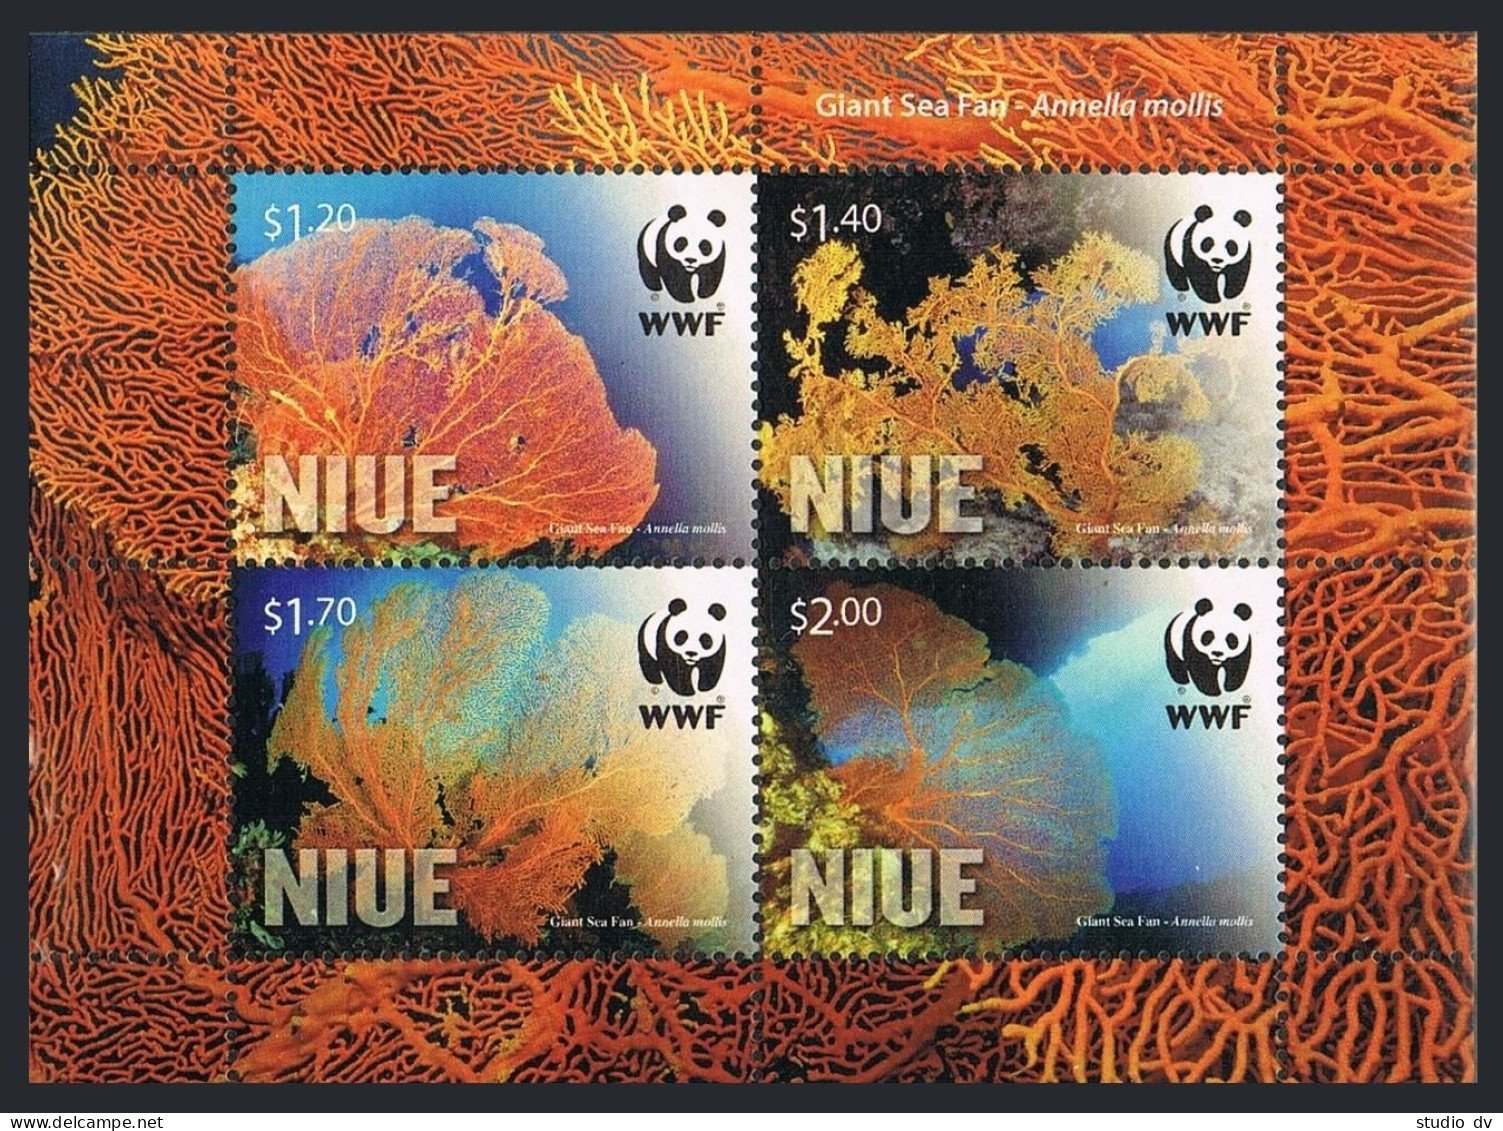 Niue 881a Sheet,MNH. WWF 2012.Giant Sea Fan. - Niue